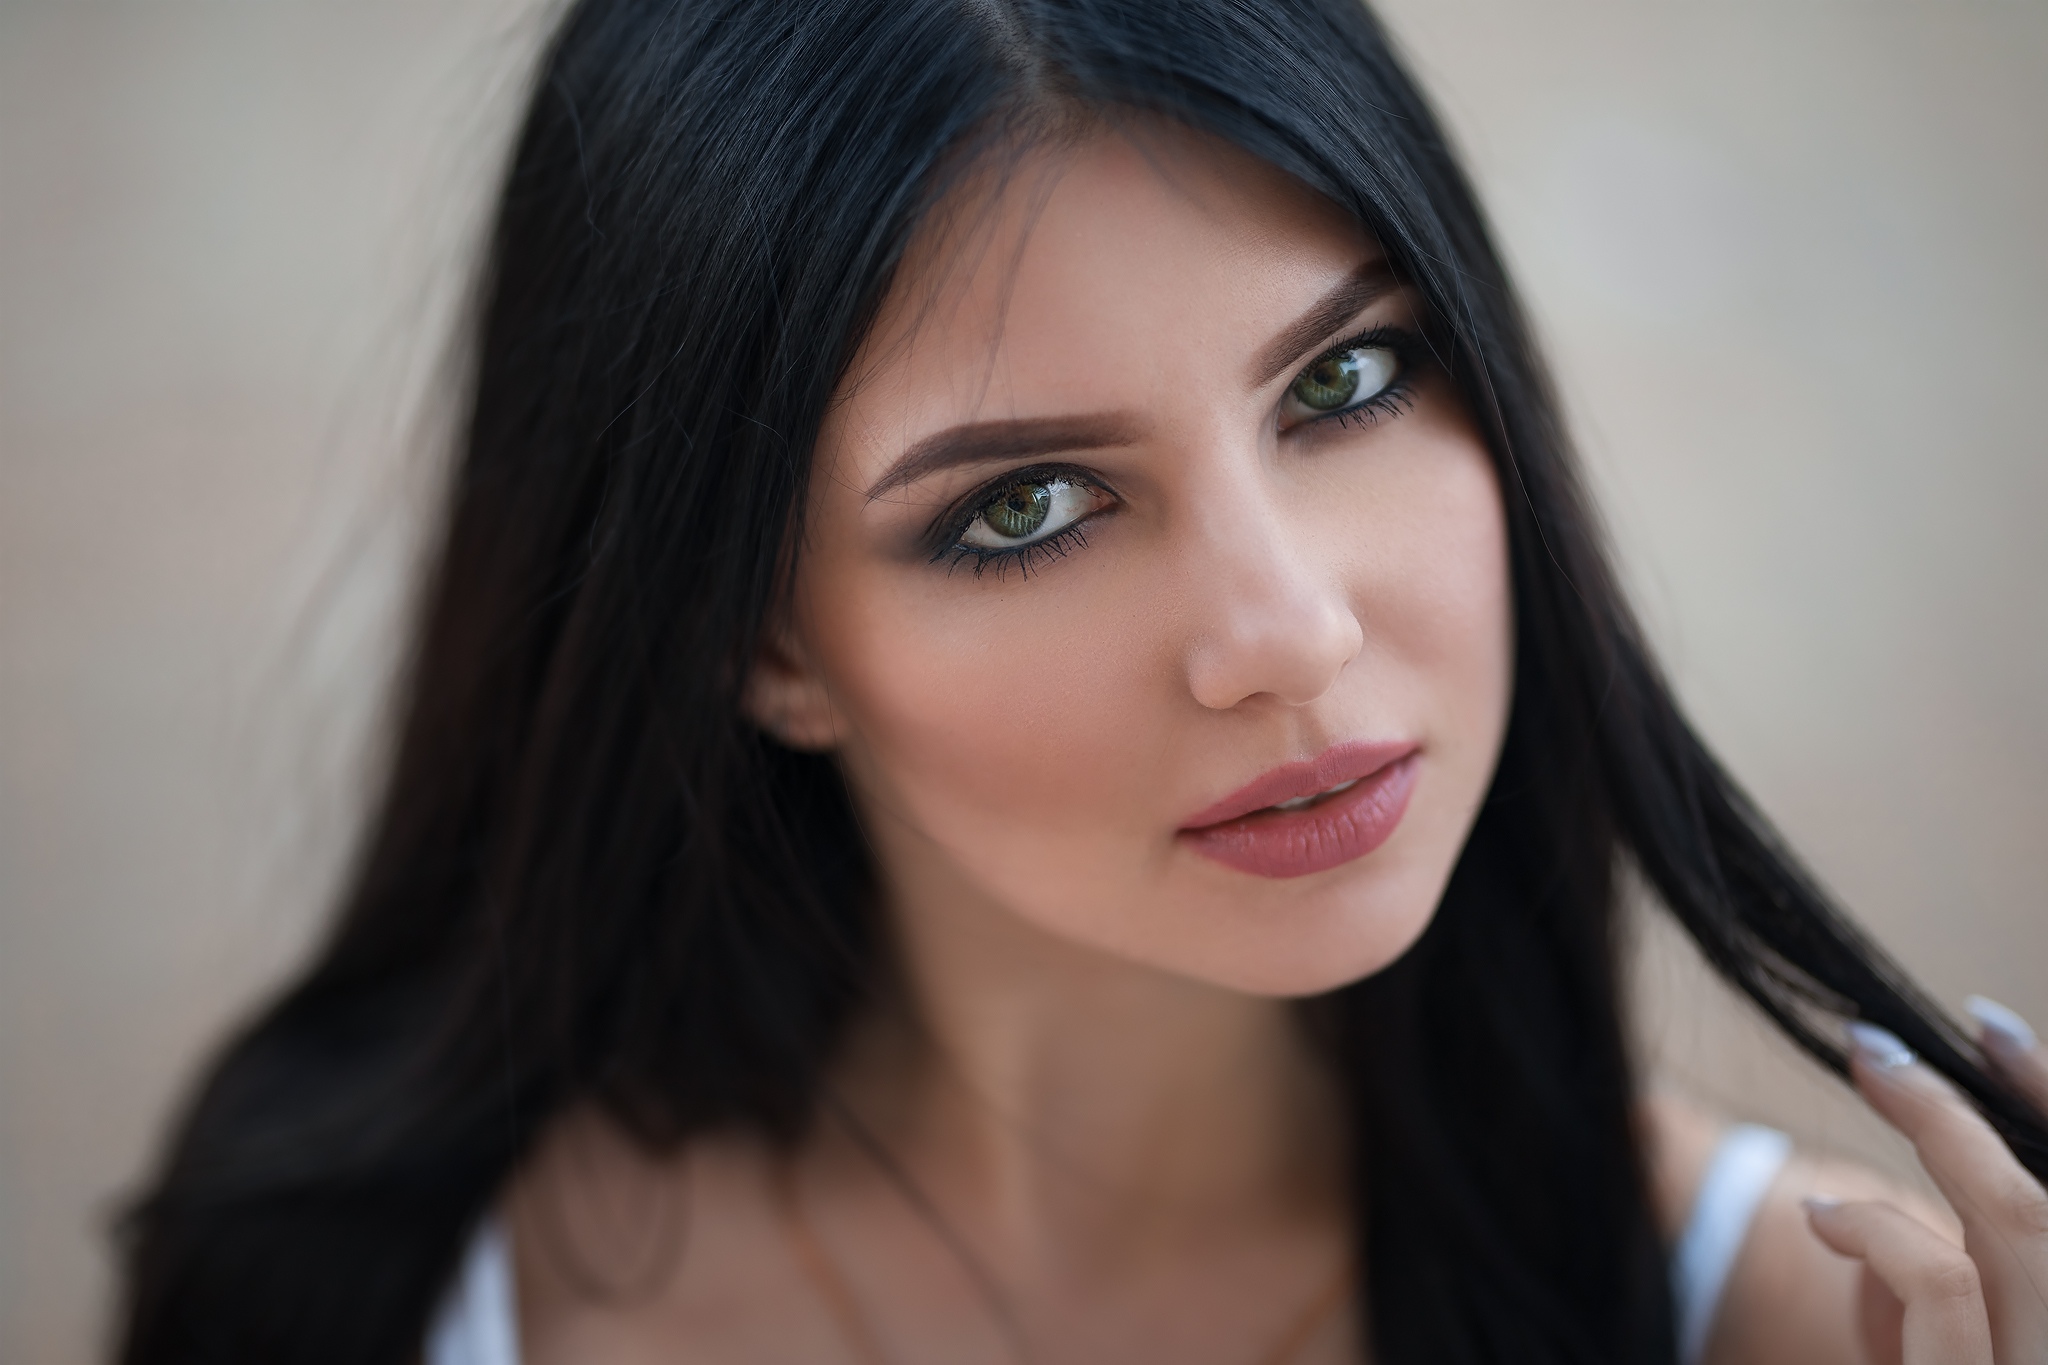 Kristina Romanova Women Model Dark Hair Green Eyes Looking At Viewer Pink Lipstick Face Touching Hai 2048x1365